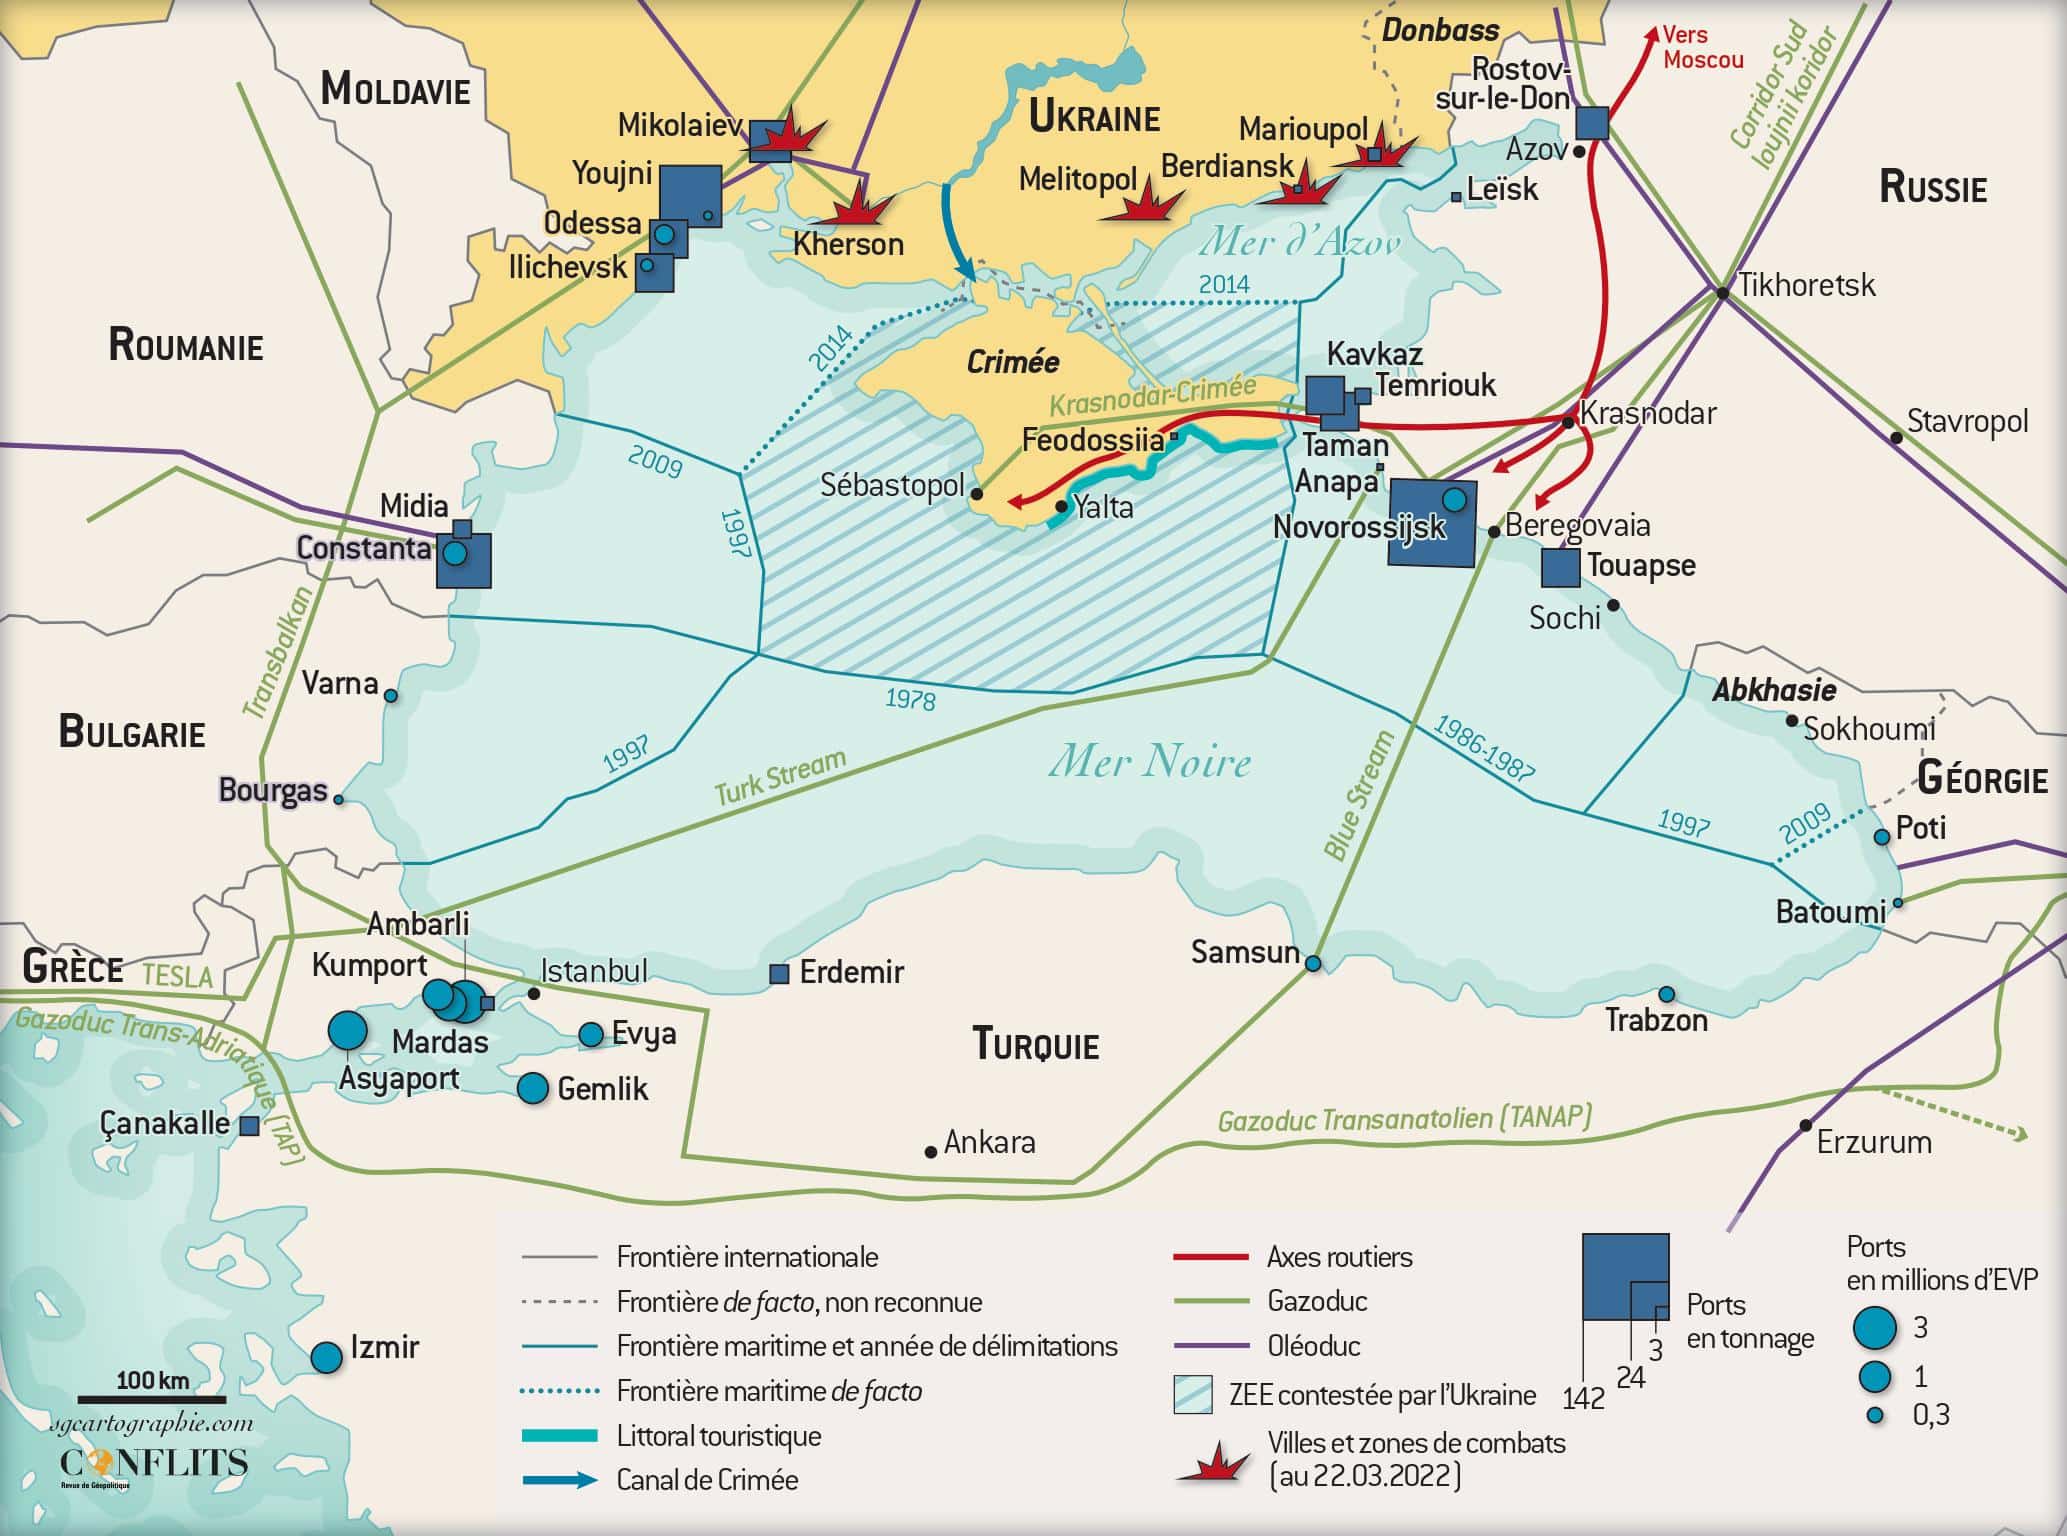 En mer Noire, une flotte russe dominante, mais vulnérable | Conflits :  Revue de Géopolitique